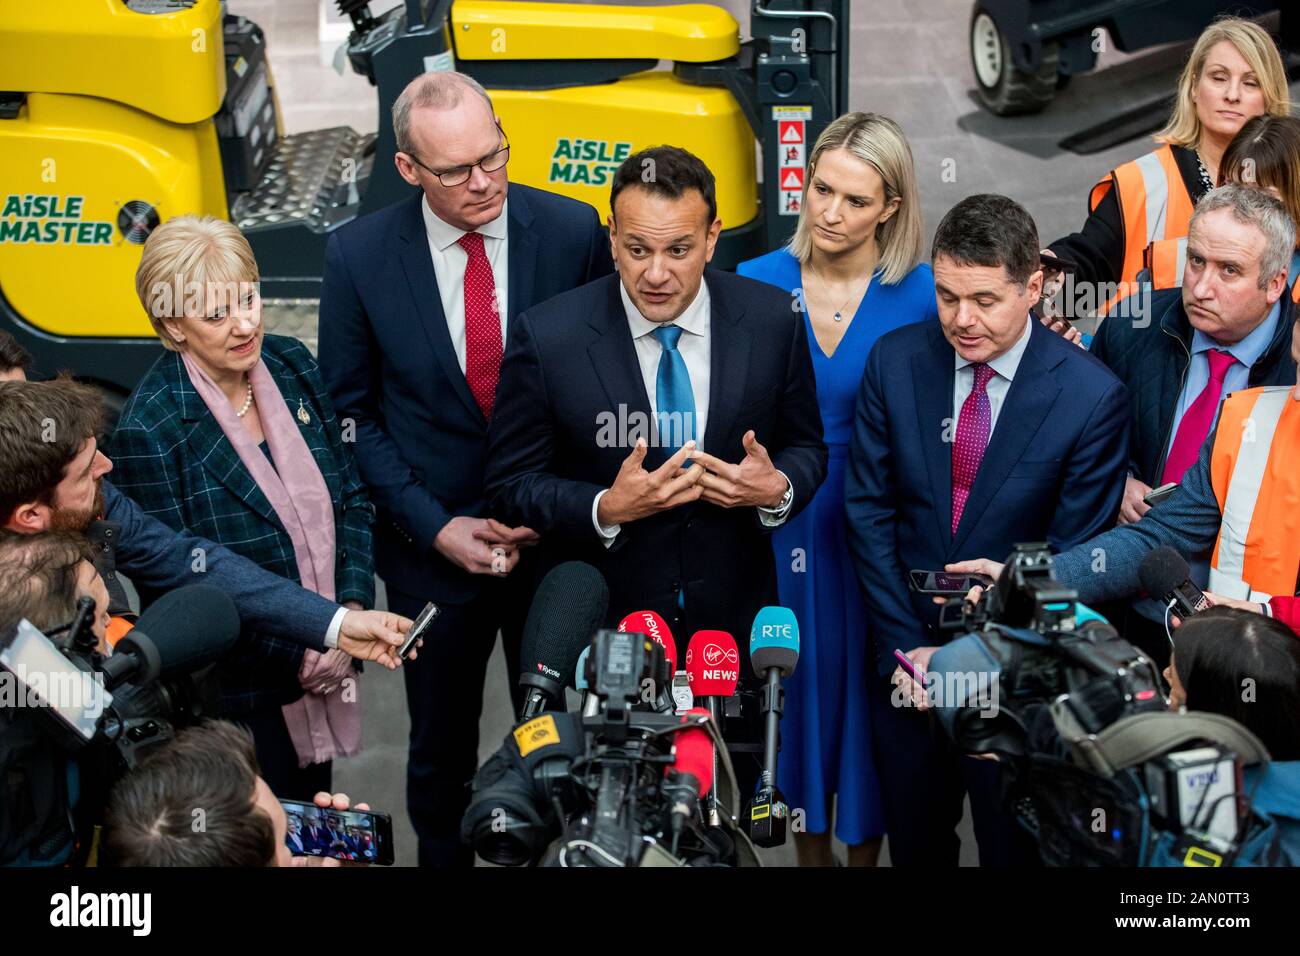 Taoiseach Leo Varadkar (centro) rispondere alle domande dei media durante una fotocellula a Combilift ad Annahagh, Co. Monaghan per lanciare la campagna elettorale generale fine Gael. Foto Stock